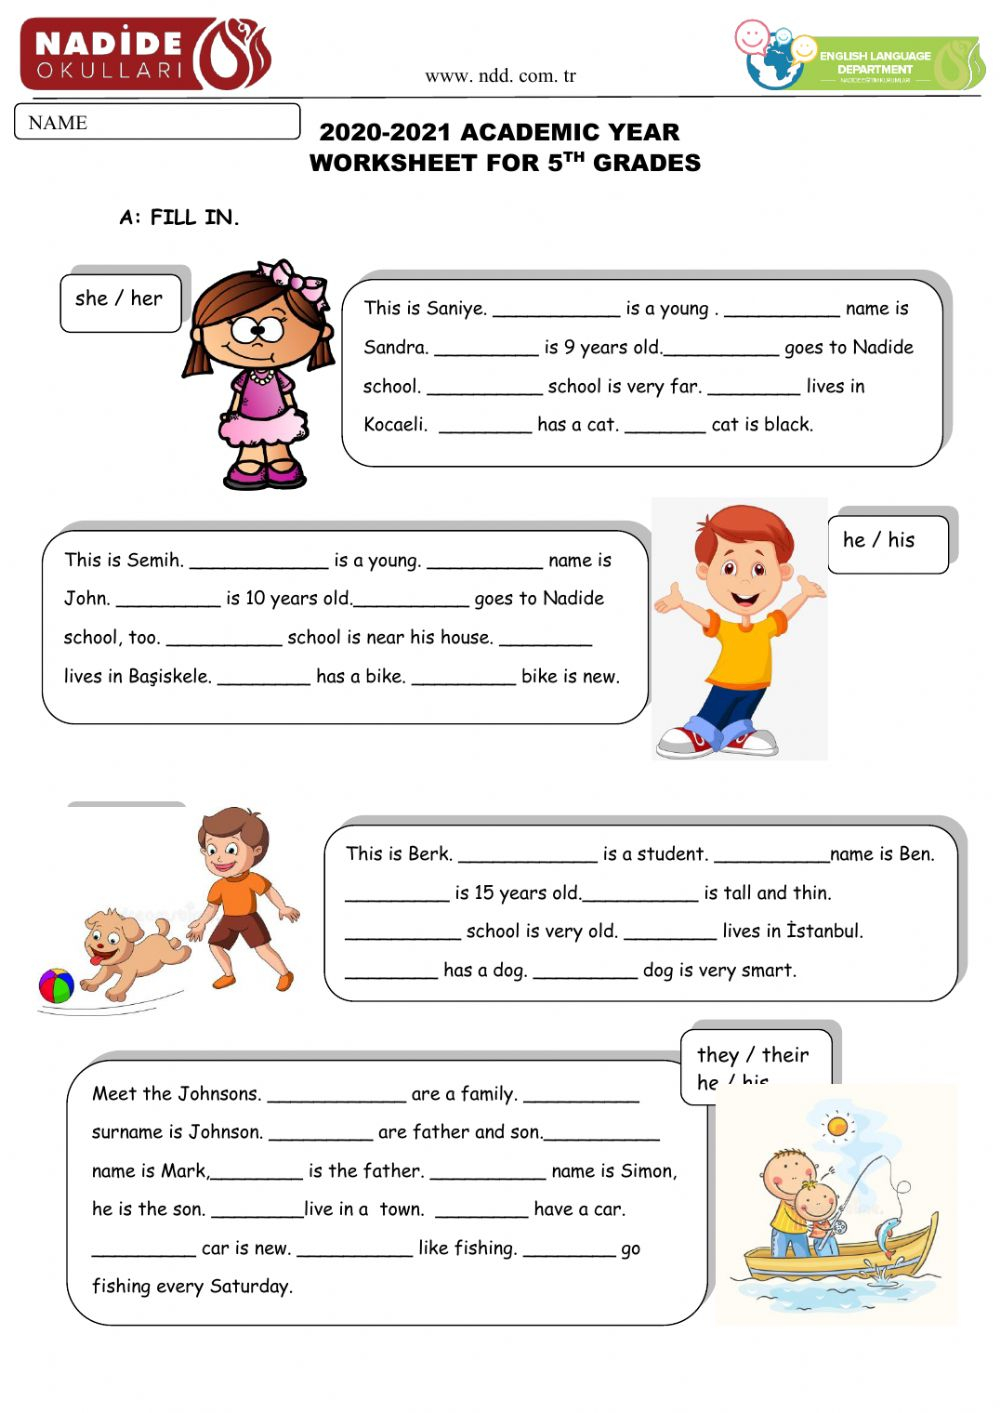 possessive-adjectives-worksheets-for-grade-5-adjectiveworksheets